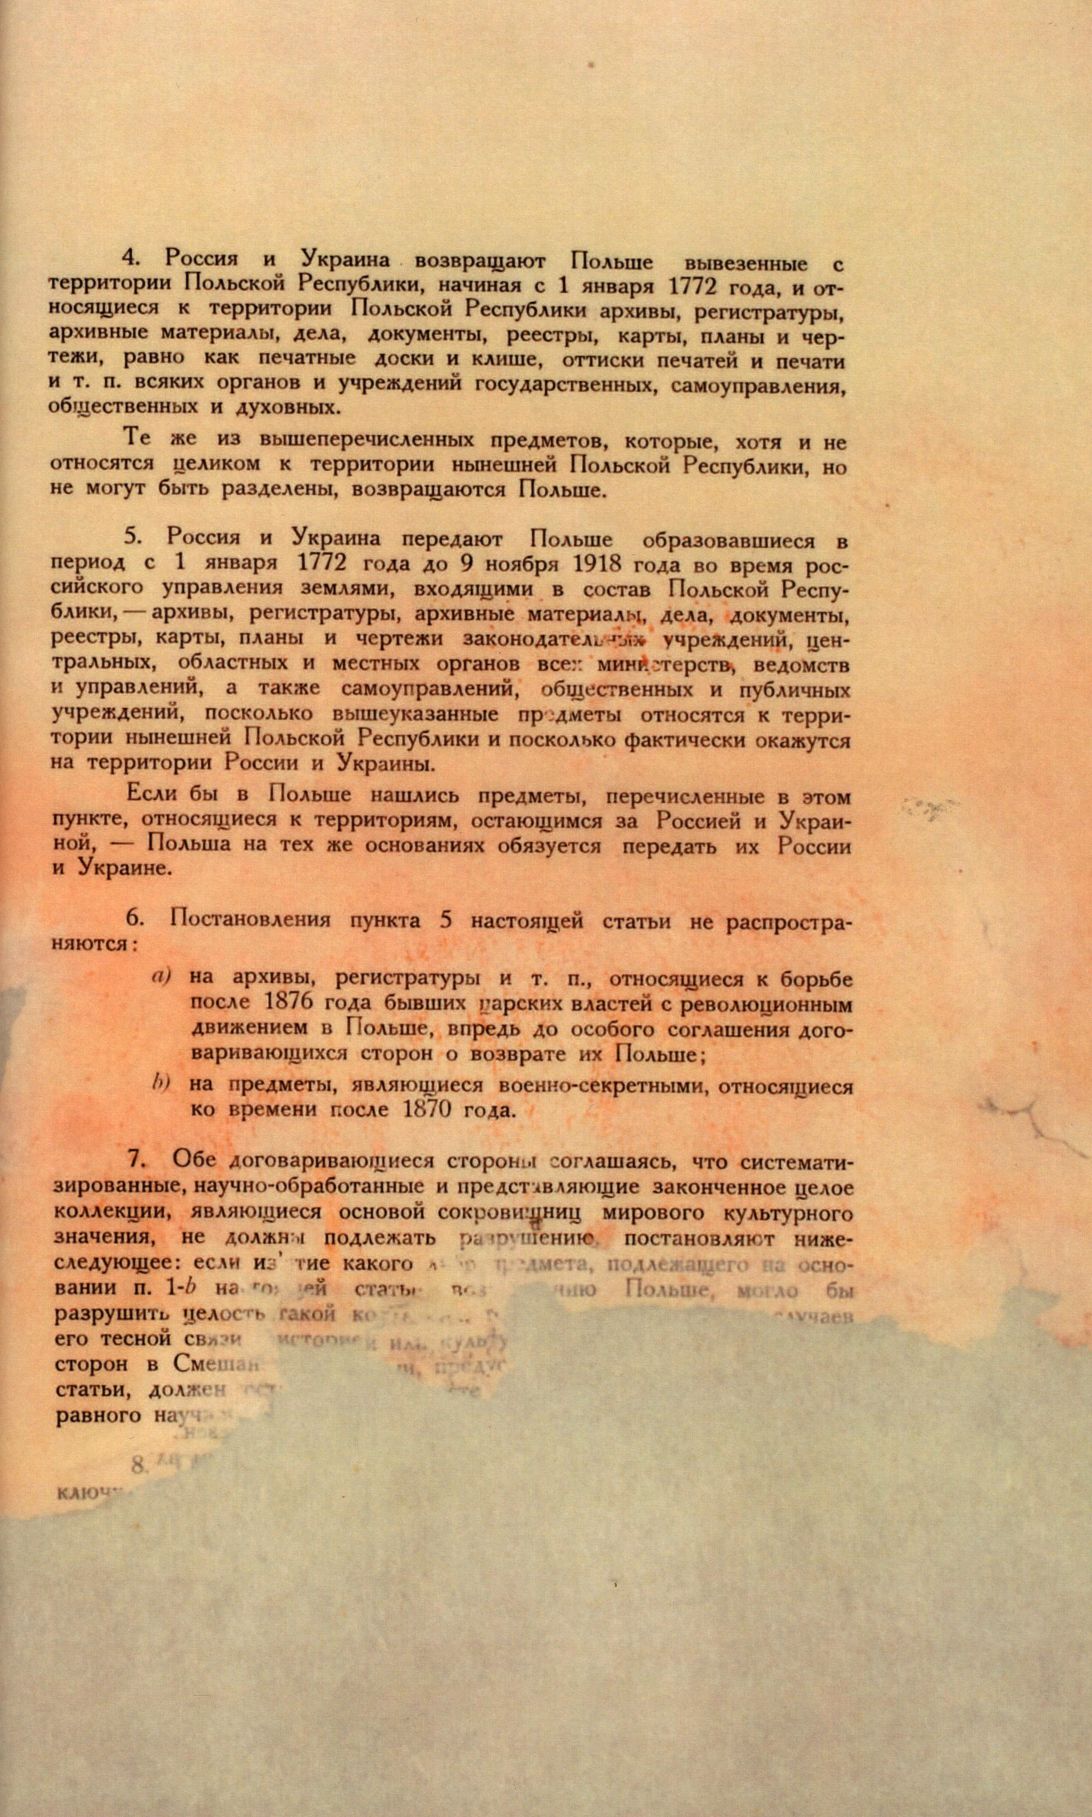 Traktat Pokoju między Polską a Rosją i Ukrainą podpisany w Rydze dnia 18 marca 1921 roku, s. 77, MSZ, sygn. 6739.